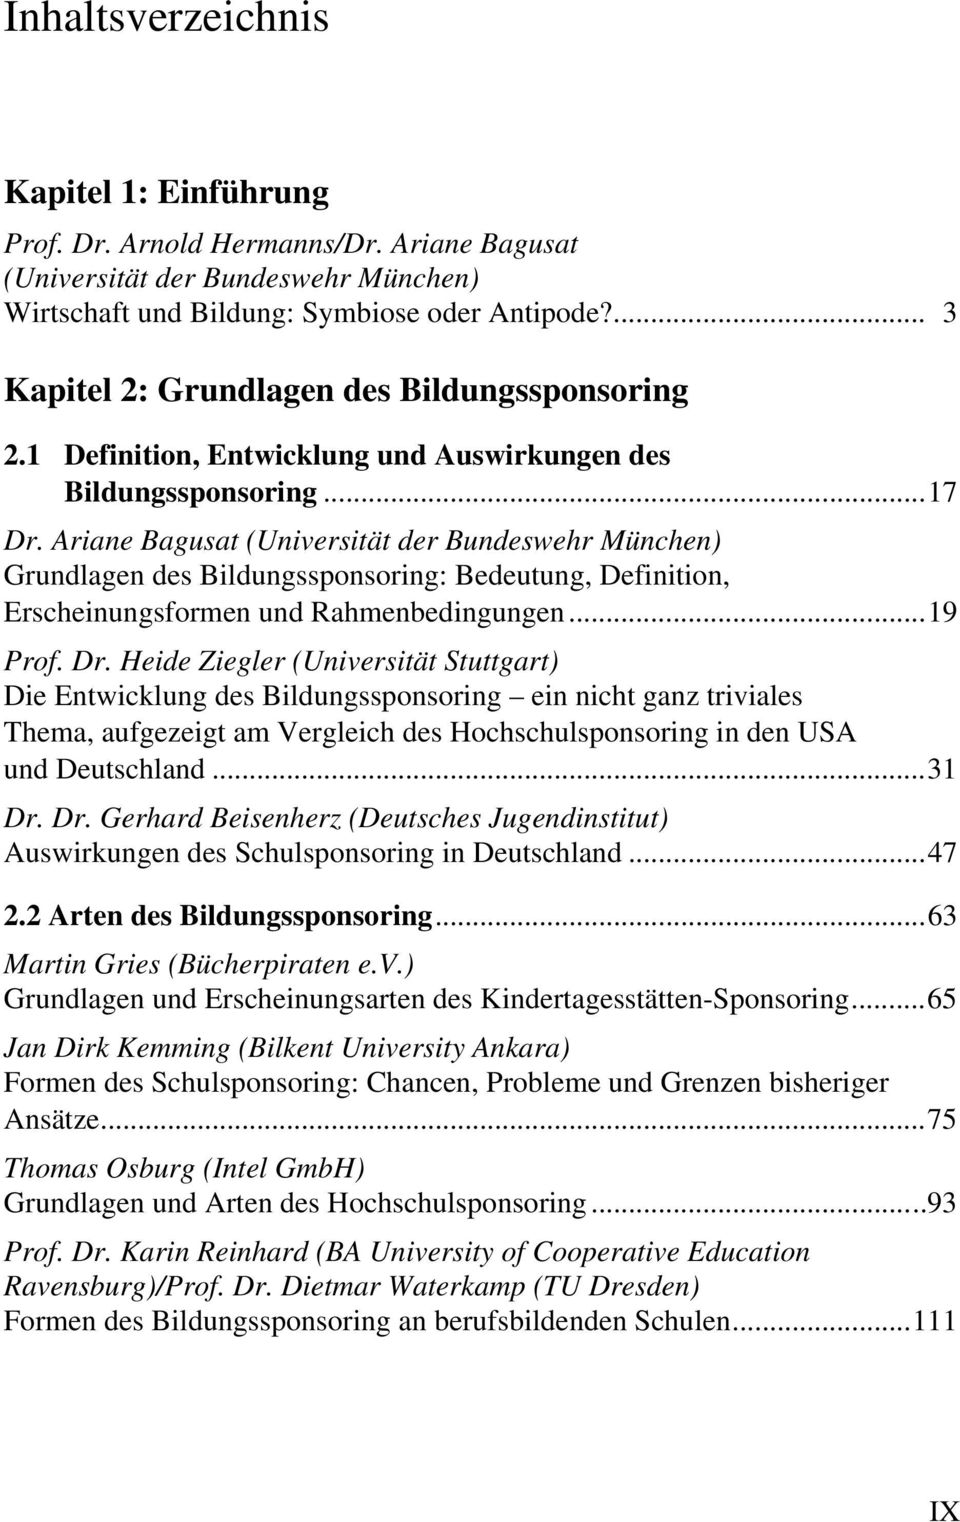 Ariane Bagusat (Universität der Bundeswehr München) Grundlagen des Bildungssponsoring: Bedeutung, Definition, Erscheinungsformen und Rahmenbedingungen...19 Prof. Dr.